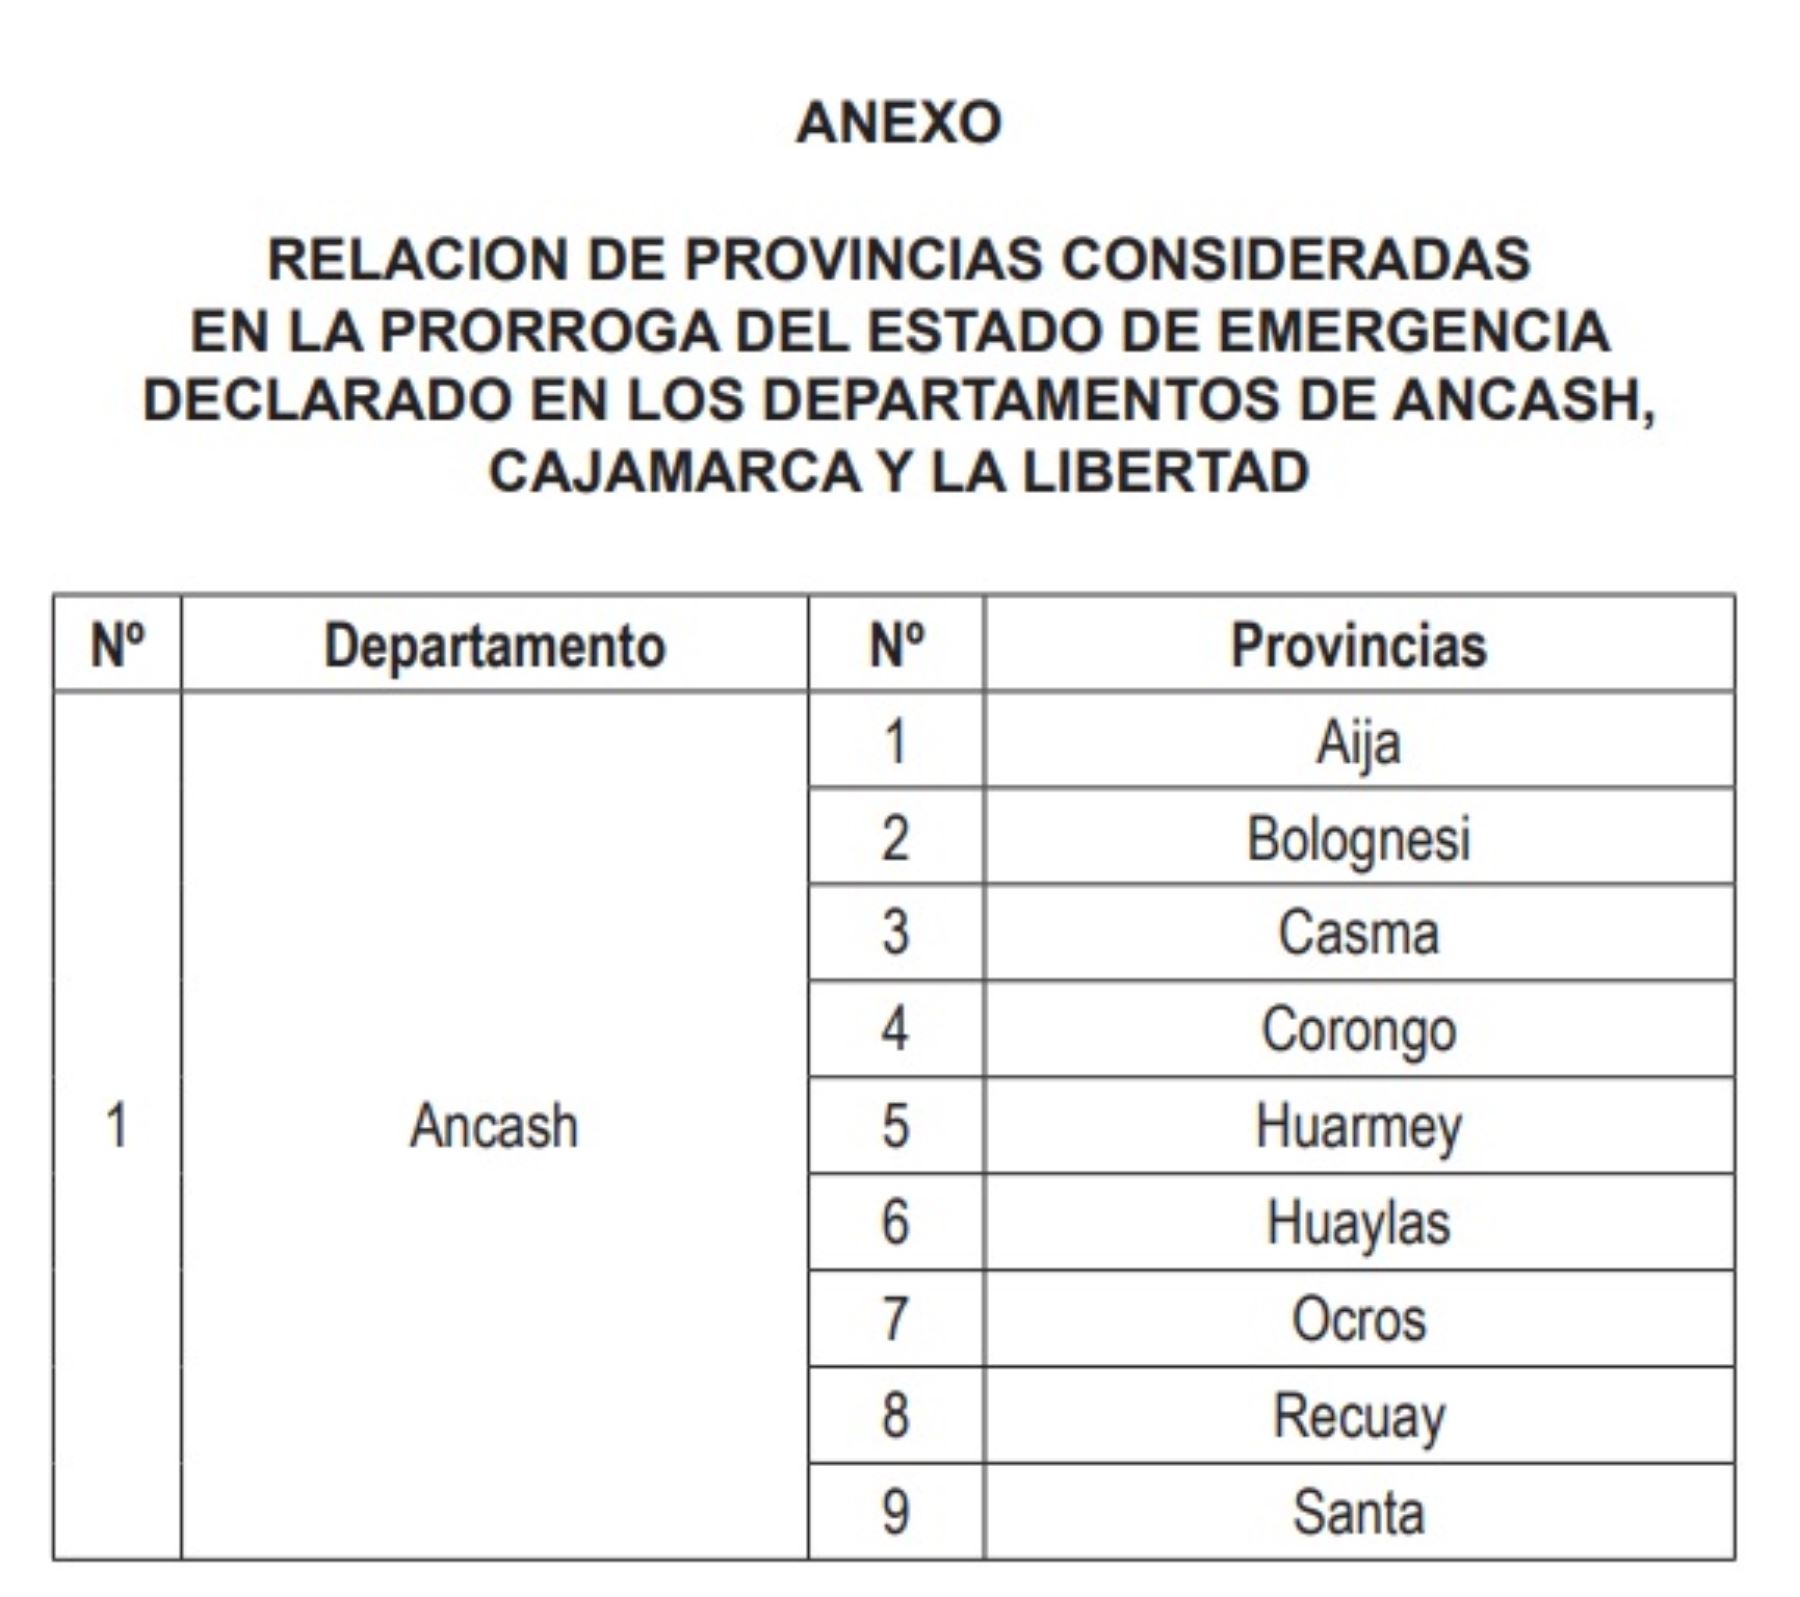 Provincias de las regiones Áncash, Cajamarca y La Libertad, consideradas en la prórroga del estado de emergencia por desastres ocasionados por las intensas lluvias.